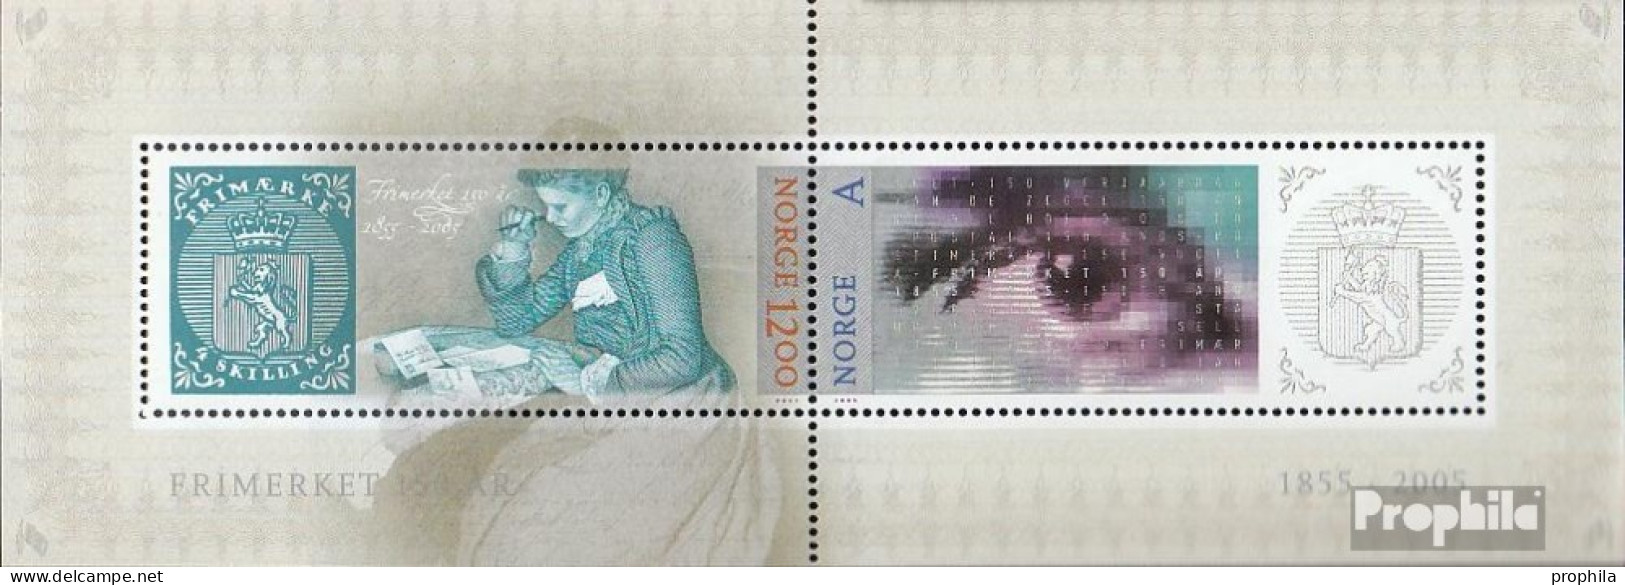 Norwegen Block29 (kompl.Ausg.) Postfrisch 2005 Norwegische Briefmarke - Nuovi